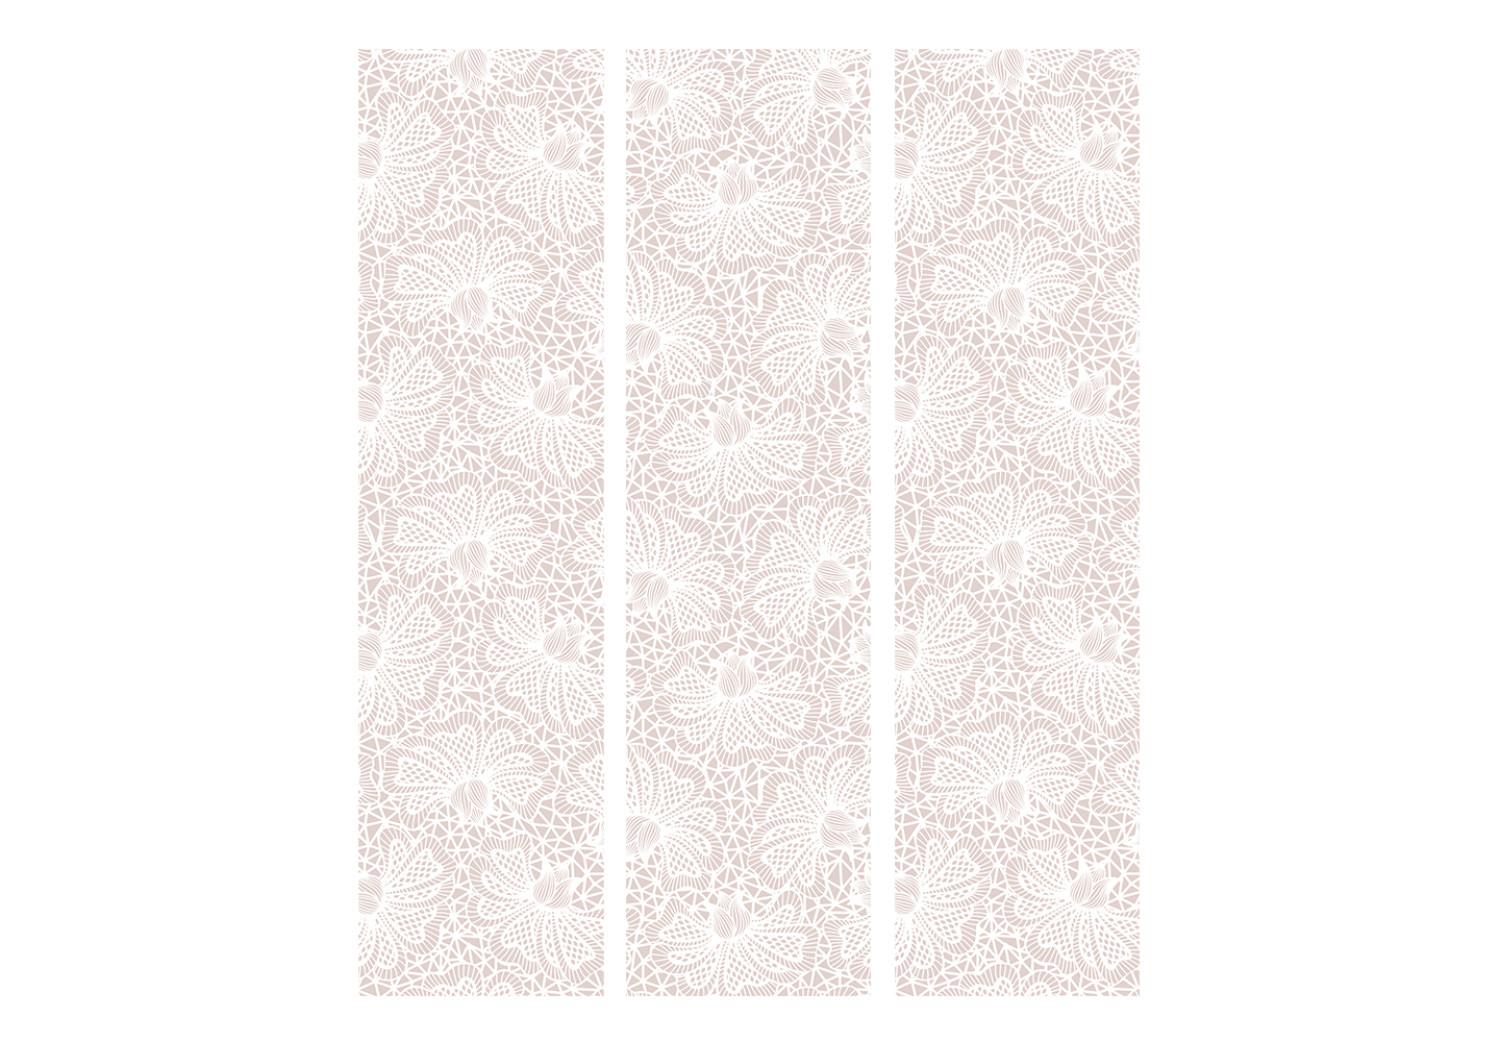 Biombo Adornos tejidos (3 partes) - patrón vegetal beige sobre fondo blanco